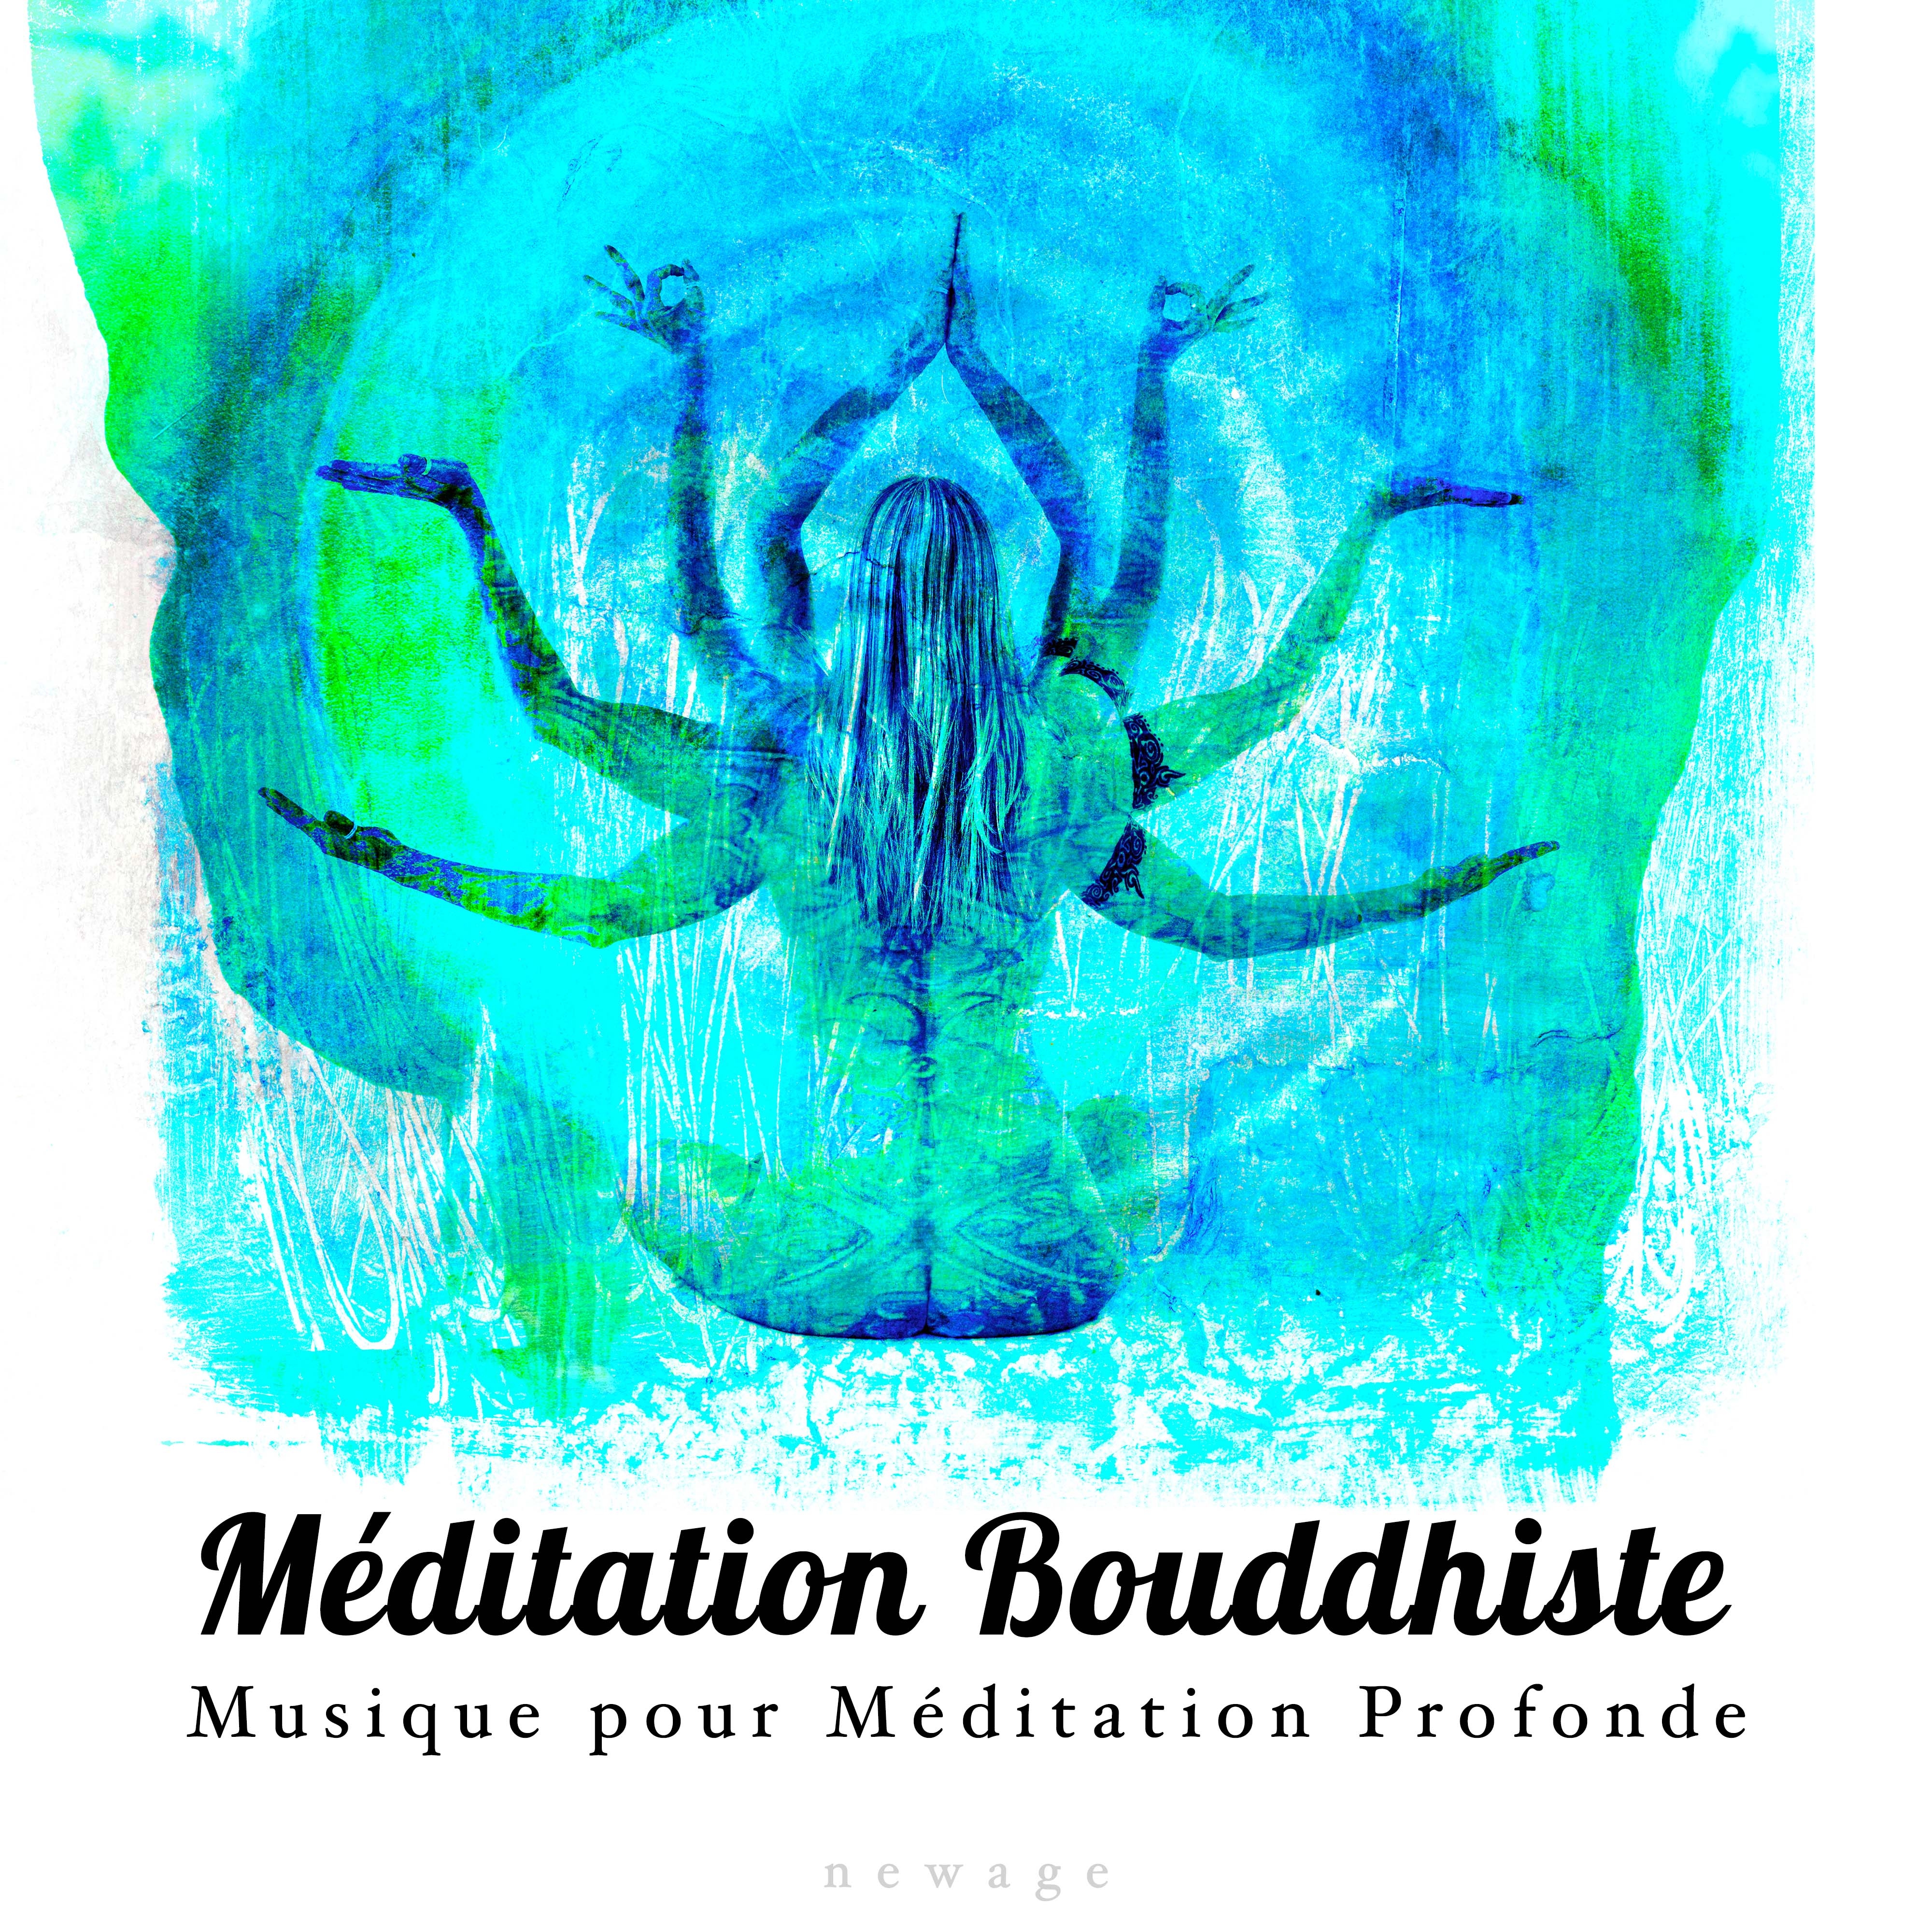 Méditation Bouddhiste: Musique pour Méditation Profonde, Musique pour Dormir Profondement